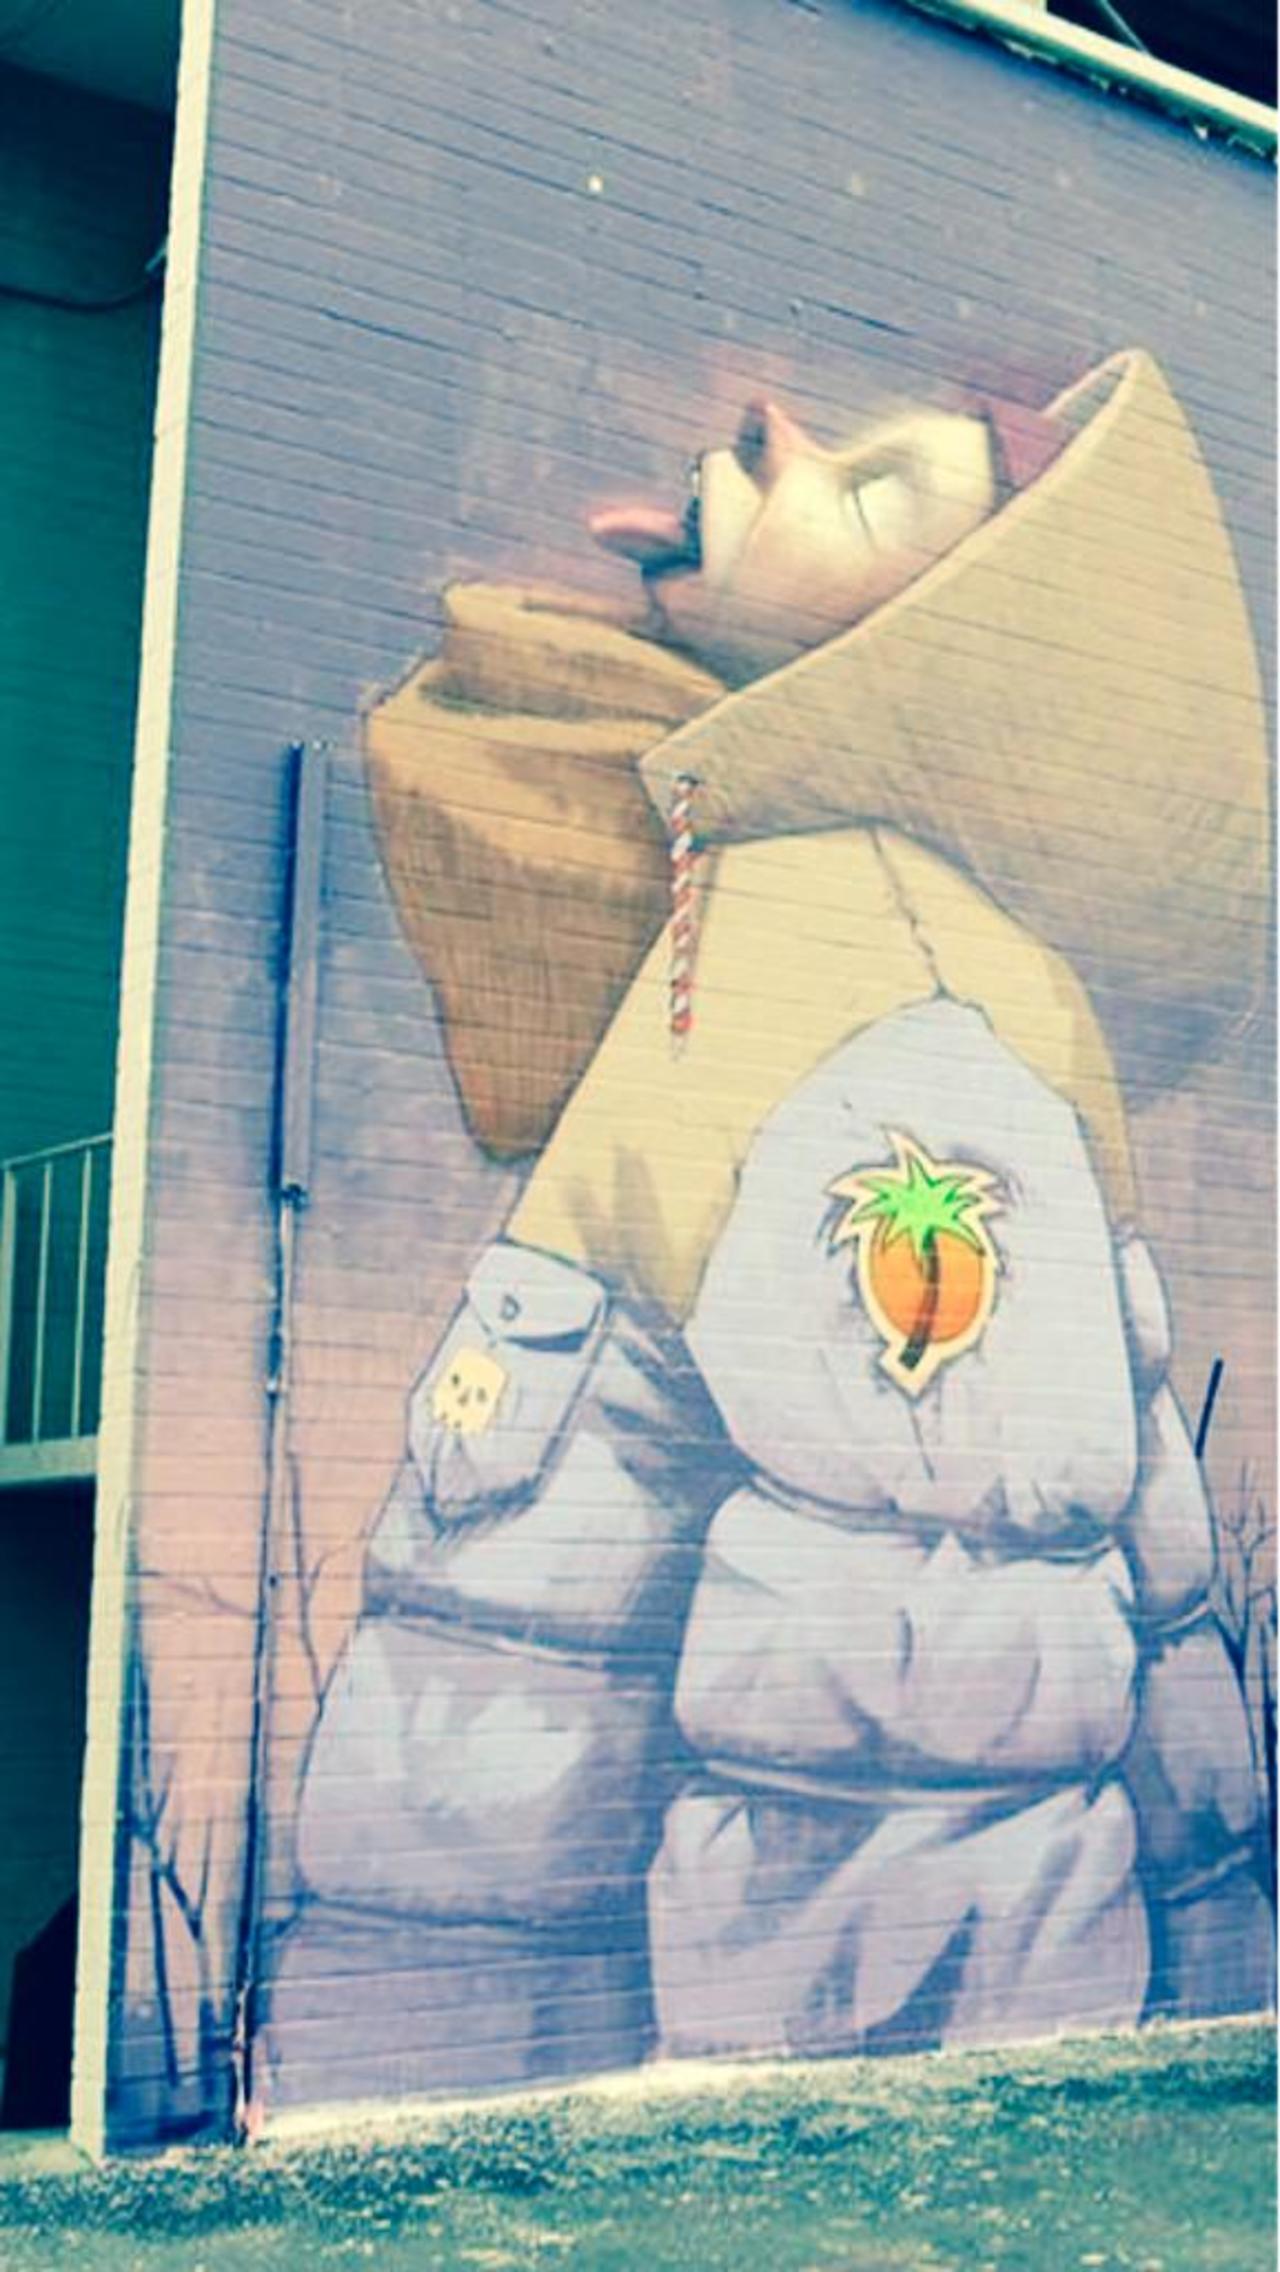 Etam cru #sprayart #stencil #streetart #graffiti #urbanart #mural #murales http://t.co/rLaAEPTYJV